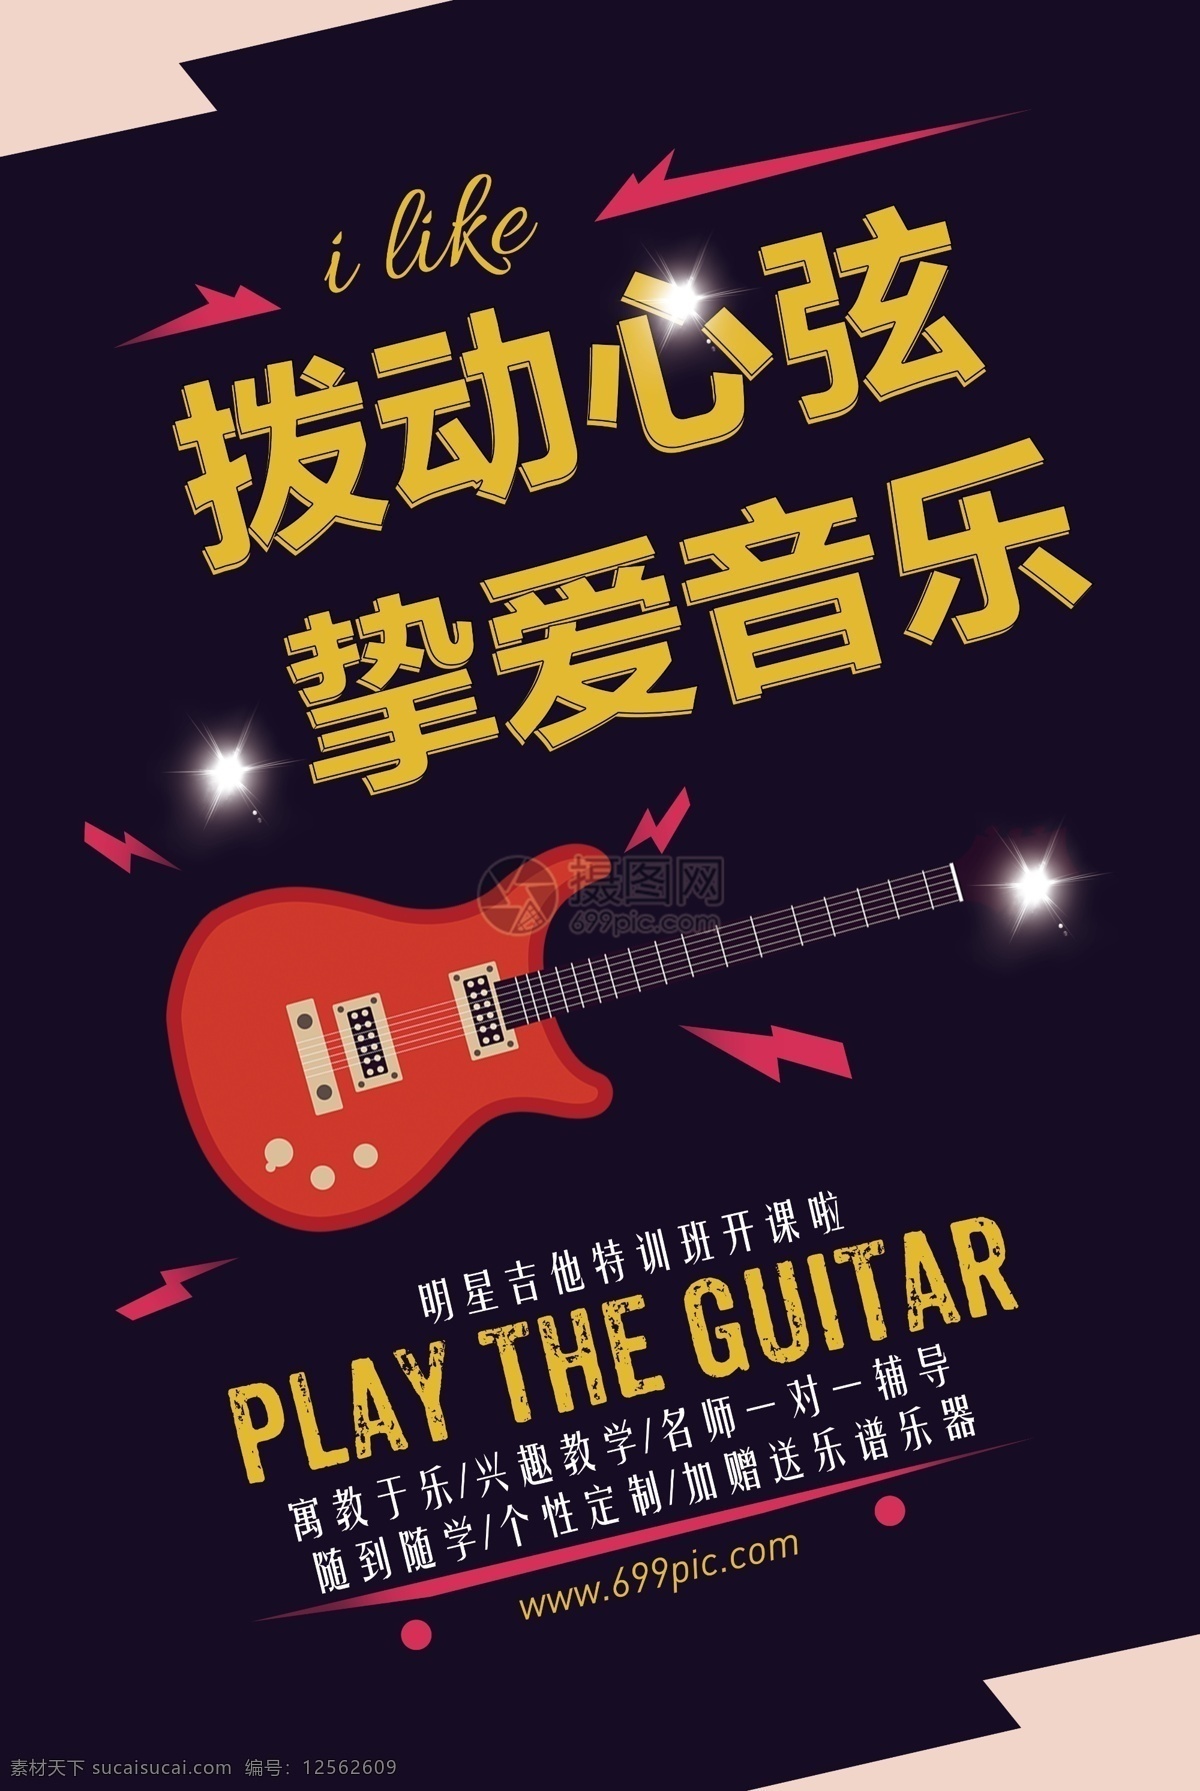 音乐 吉他 培训 招生 海报 拨动心弦 挚爱音乐 吉他培训 招生海报 课外兴趣班 培训招生 乐器